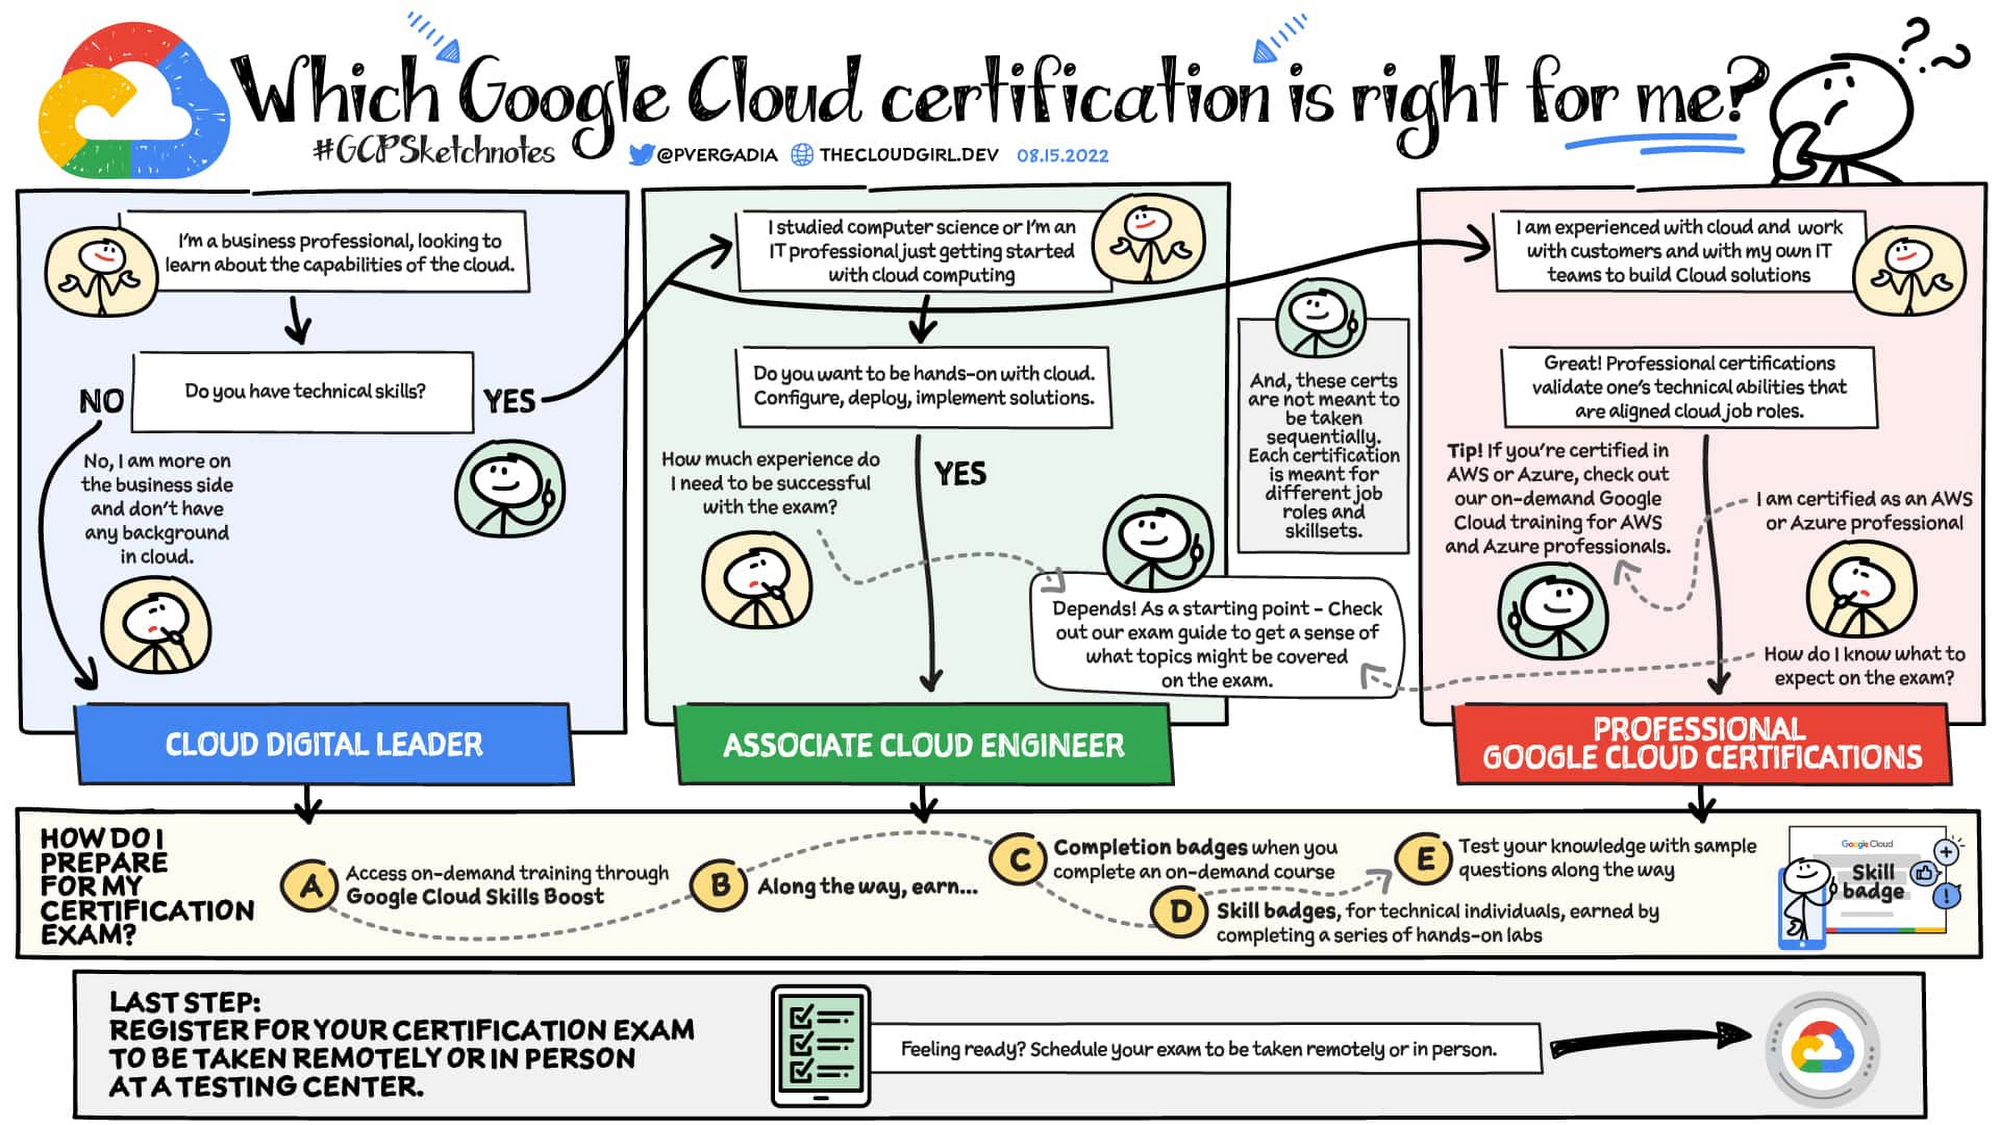 Will Google Cloud certification get me a job?